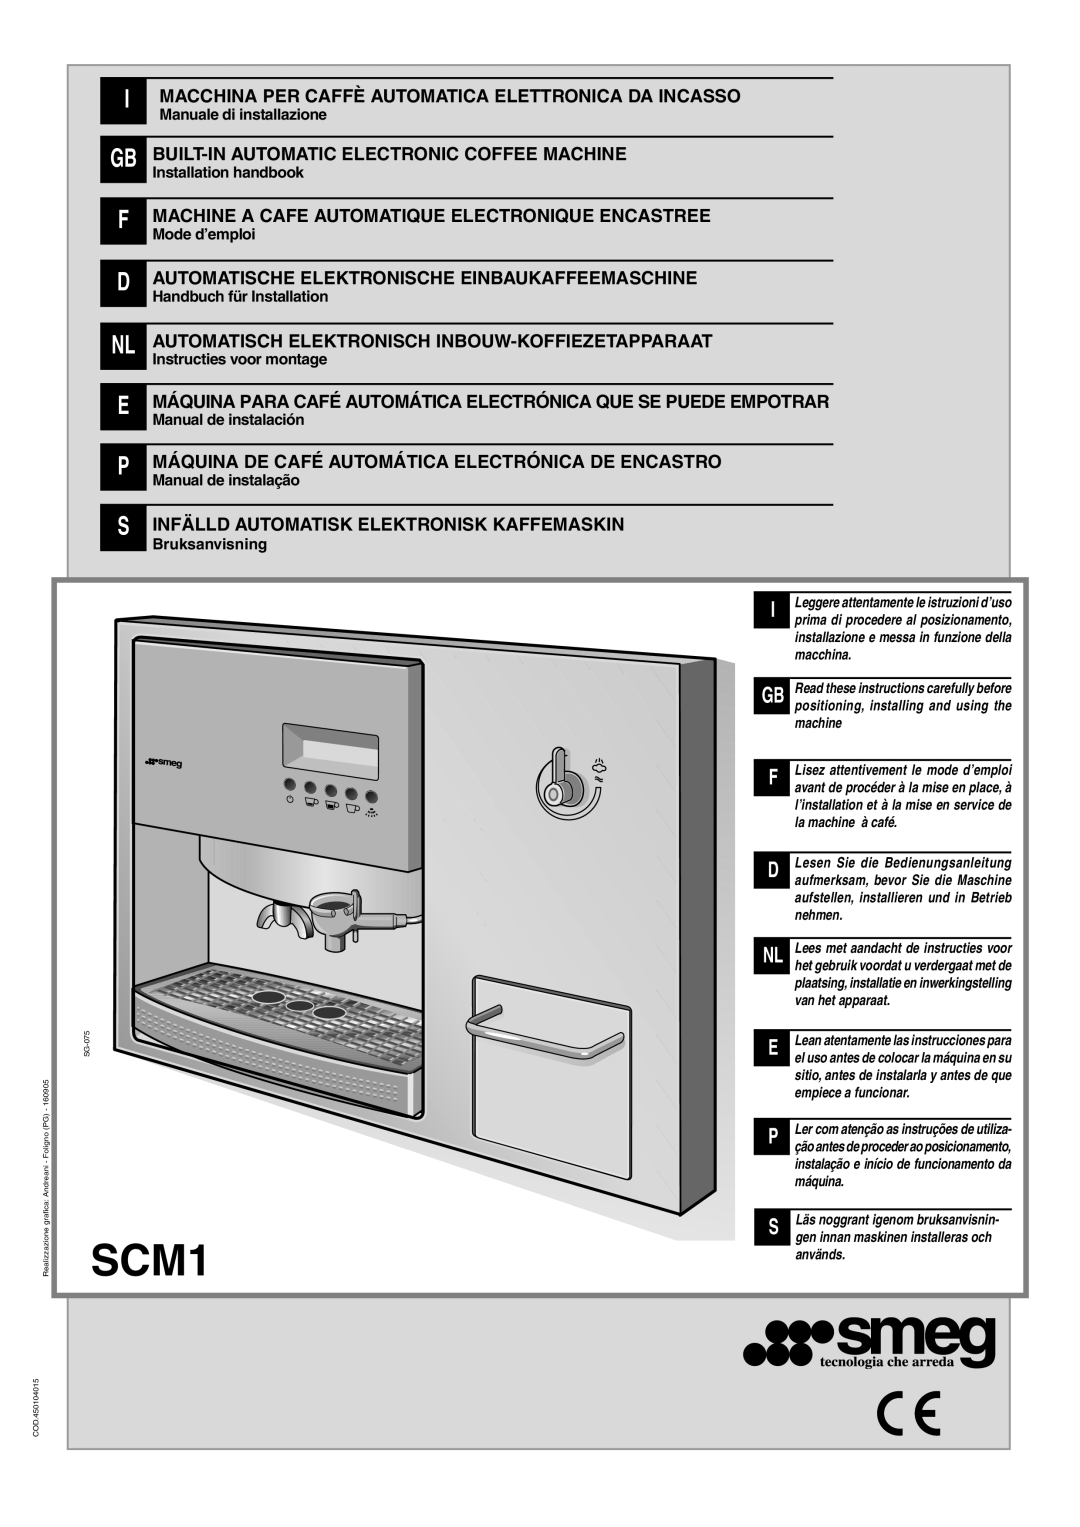 Smeg SCM1 manual I Macchina Per Caffè Automatica Elettronica Da Incasso, Built-In Automatic Electronic Coffee Machine 